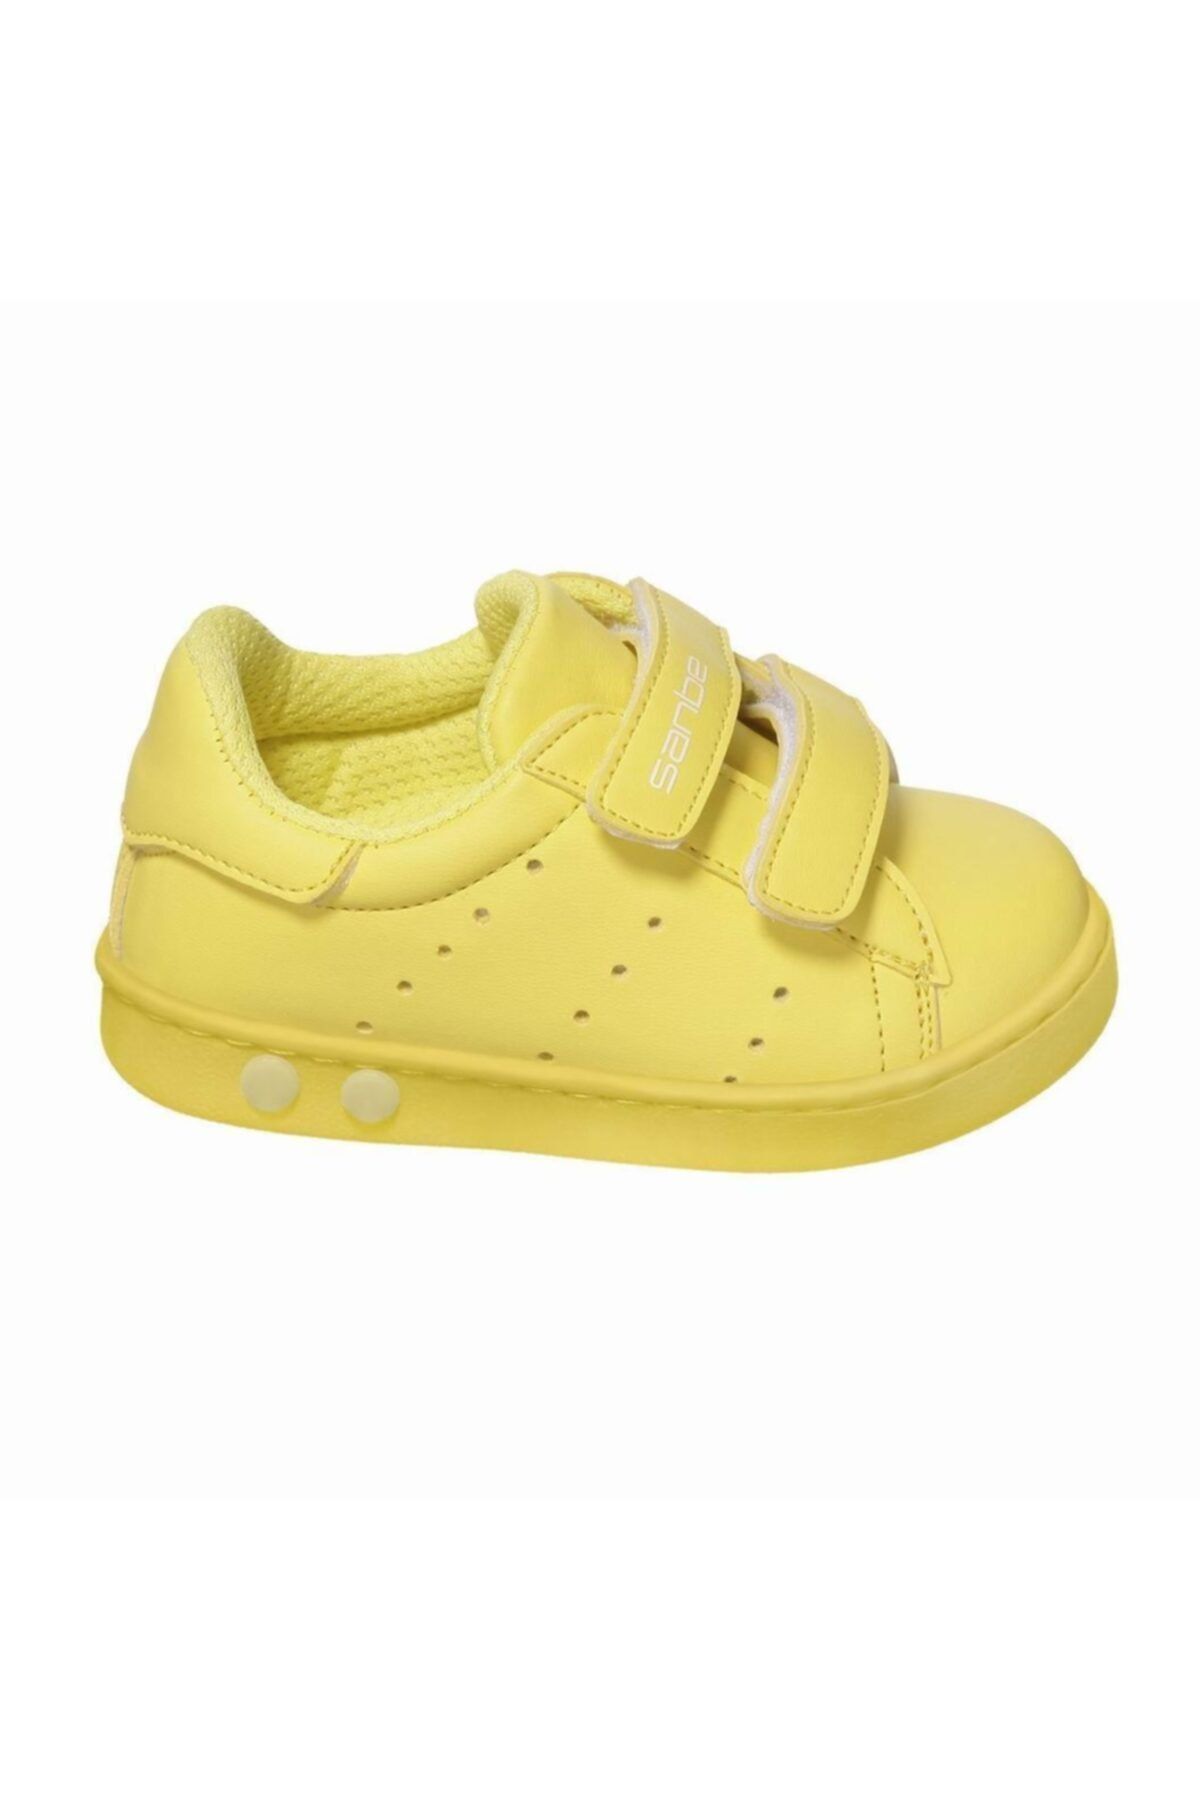 Sanbe 128 U 5401 19-24 Işıklı Erkek Çocuk Ayakkabısı Sarı